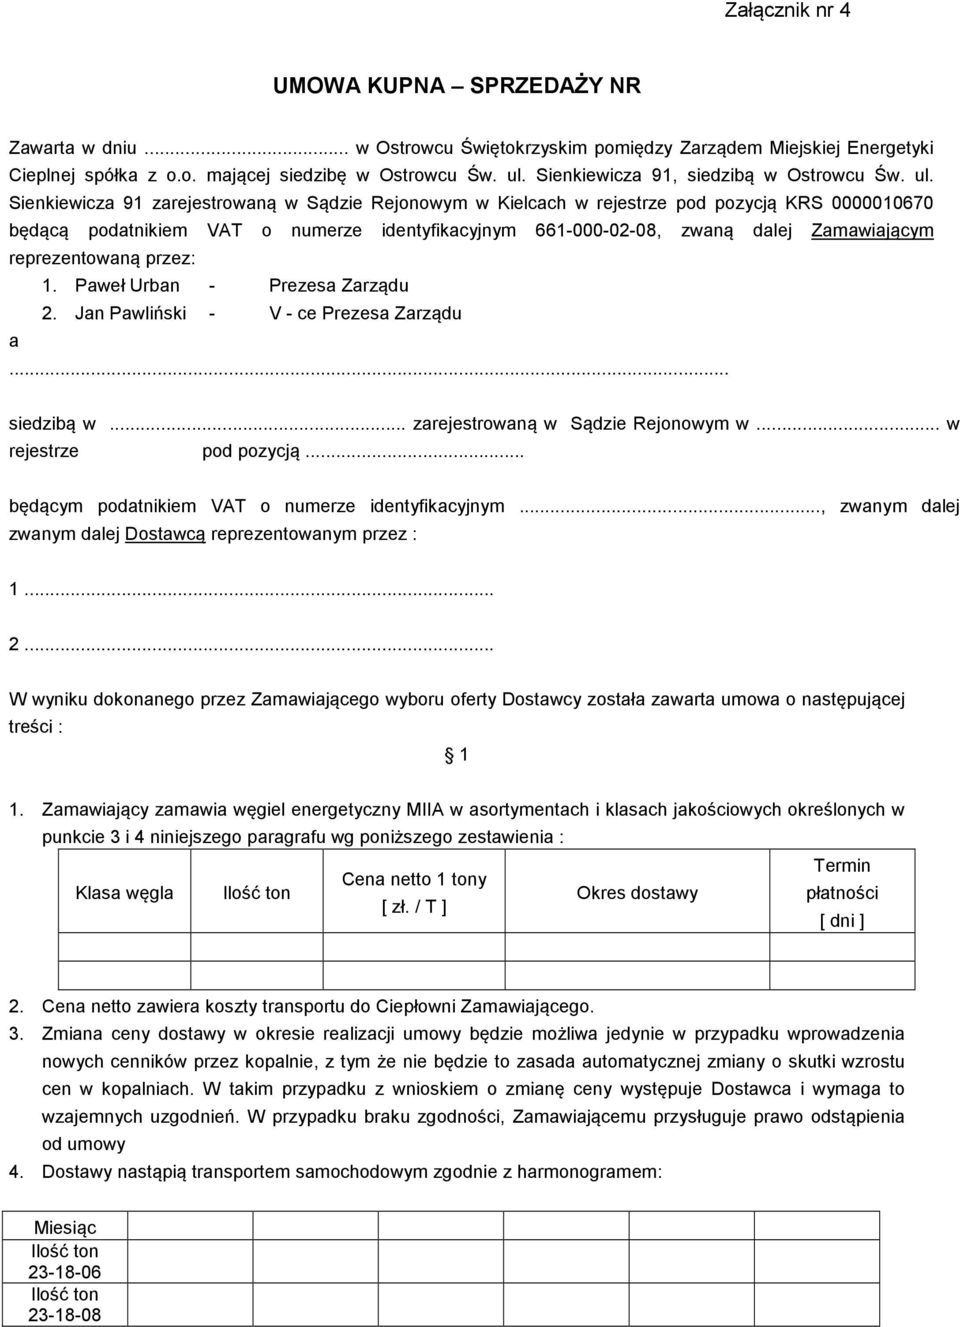 Sienkiewicza 91 zarejestrowaną w Sądzie Rejonowym w Kielcach w rejestrze pod pozycją KRS 0000010670 będącą podatnikiem VAT o numerze identyfikacyjnym 661-000-02-08, zwaną dalej Zamawiającym